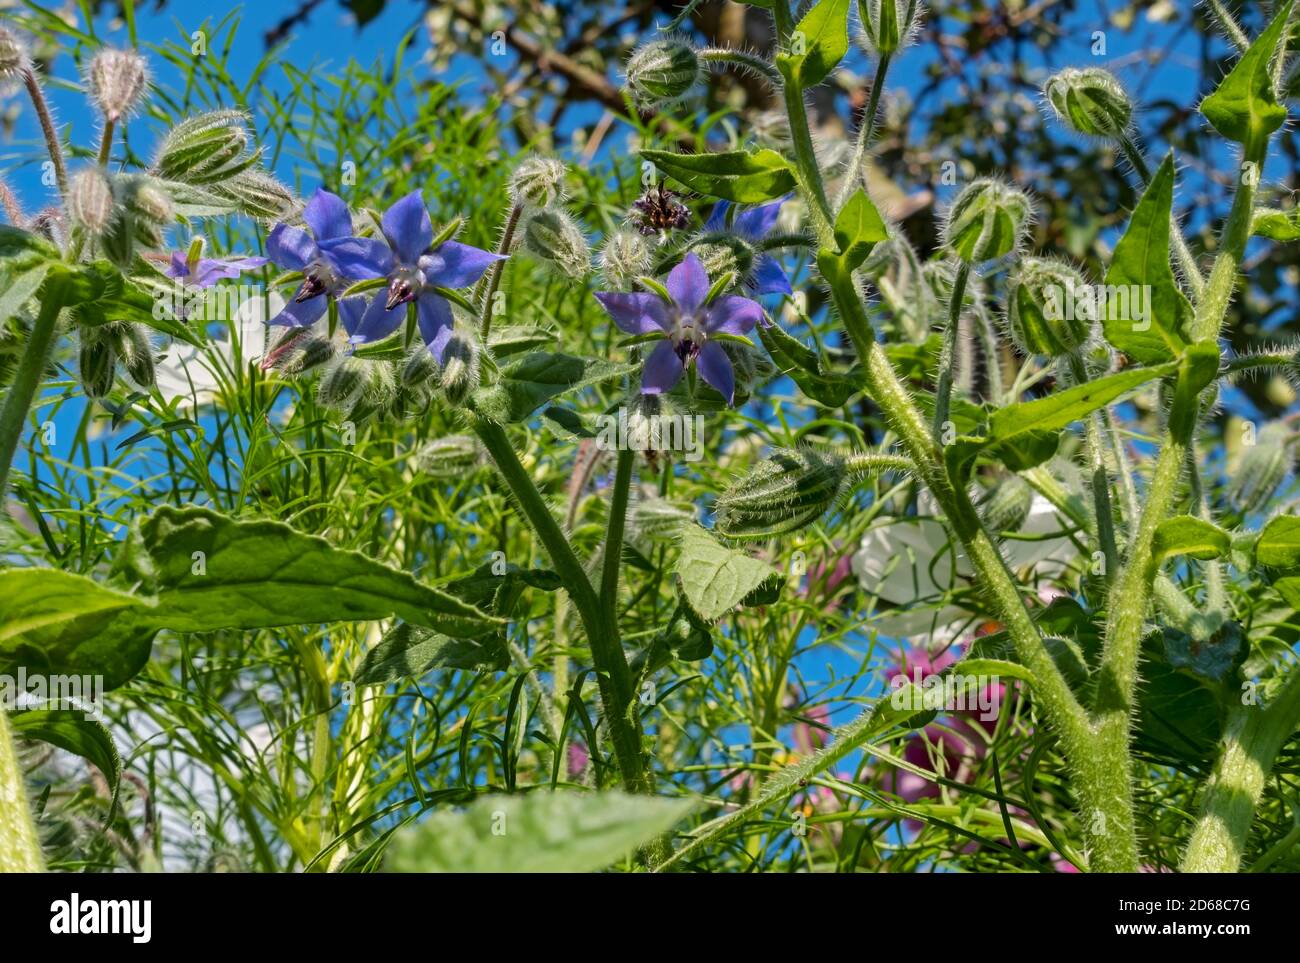 Gros plan de l'herbe de bourrache bleue (Borago officinalis) Fleur bourgeons fleurs plante herbacée en été Angleterre Royaume-Uni Royaume-Uni Grande-Bretagne Banque D'Images